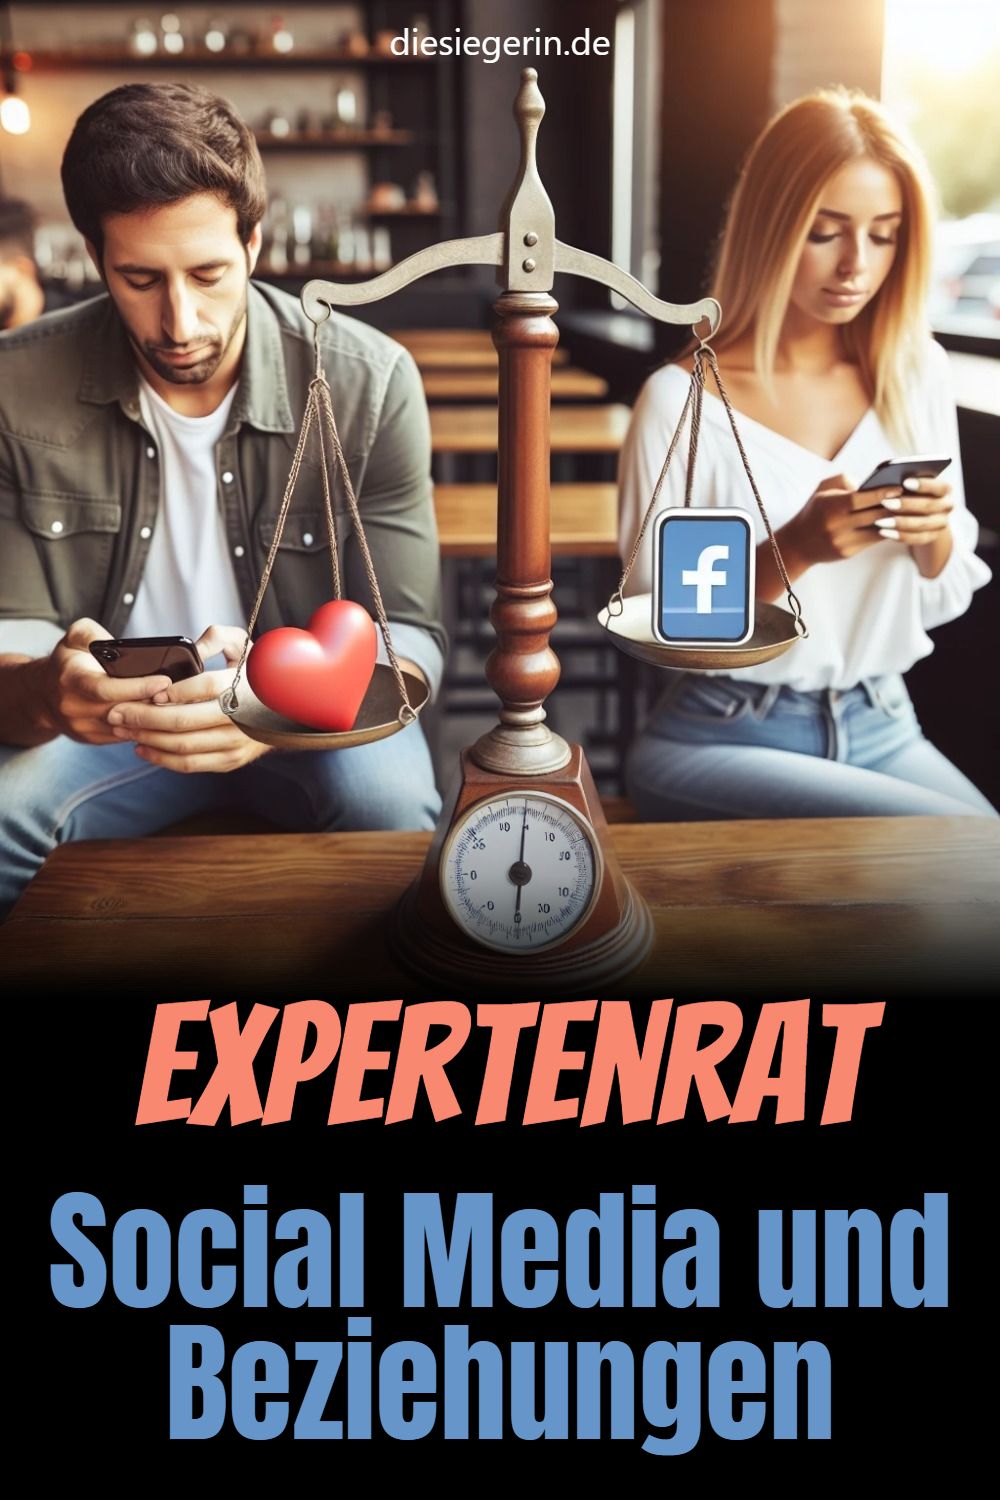 Expertenrat Social Media und Beziehungen